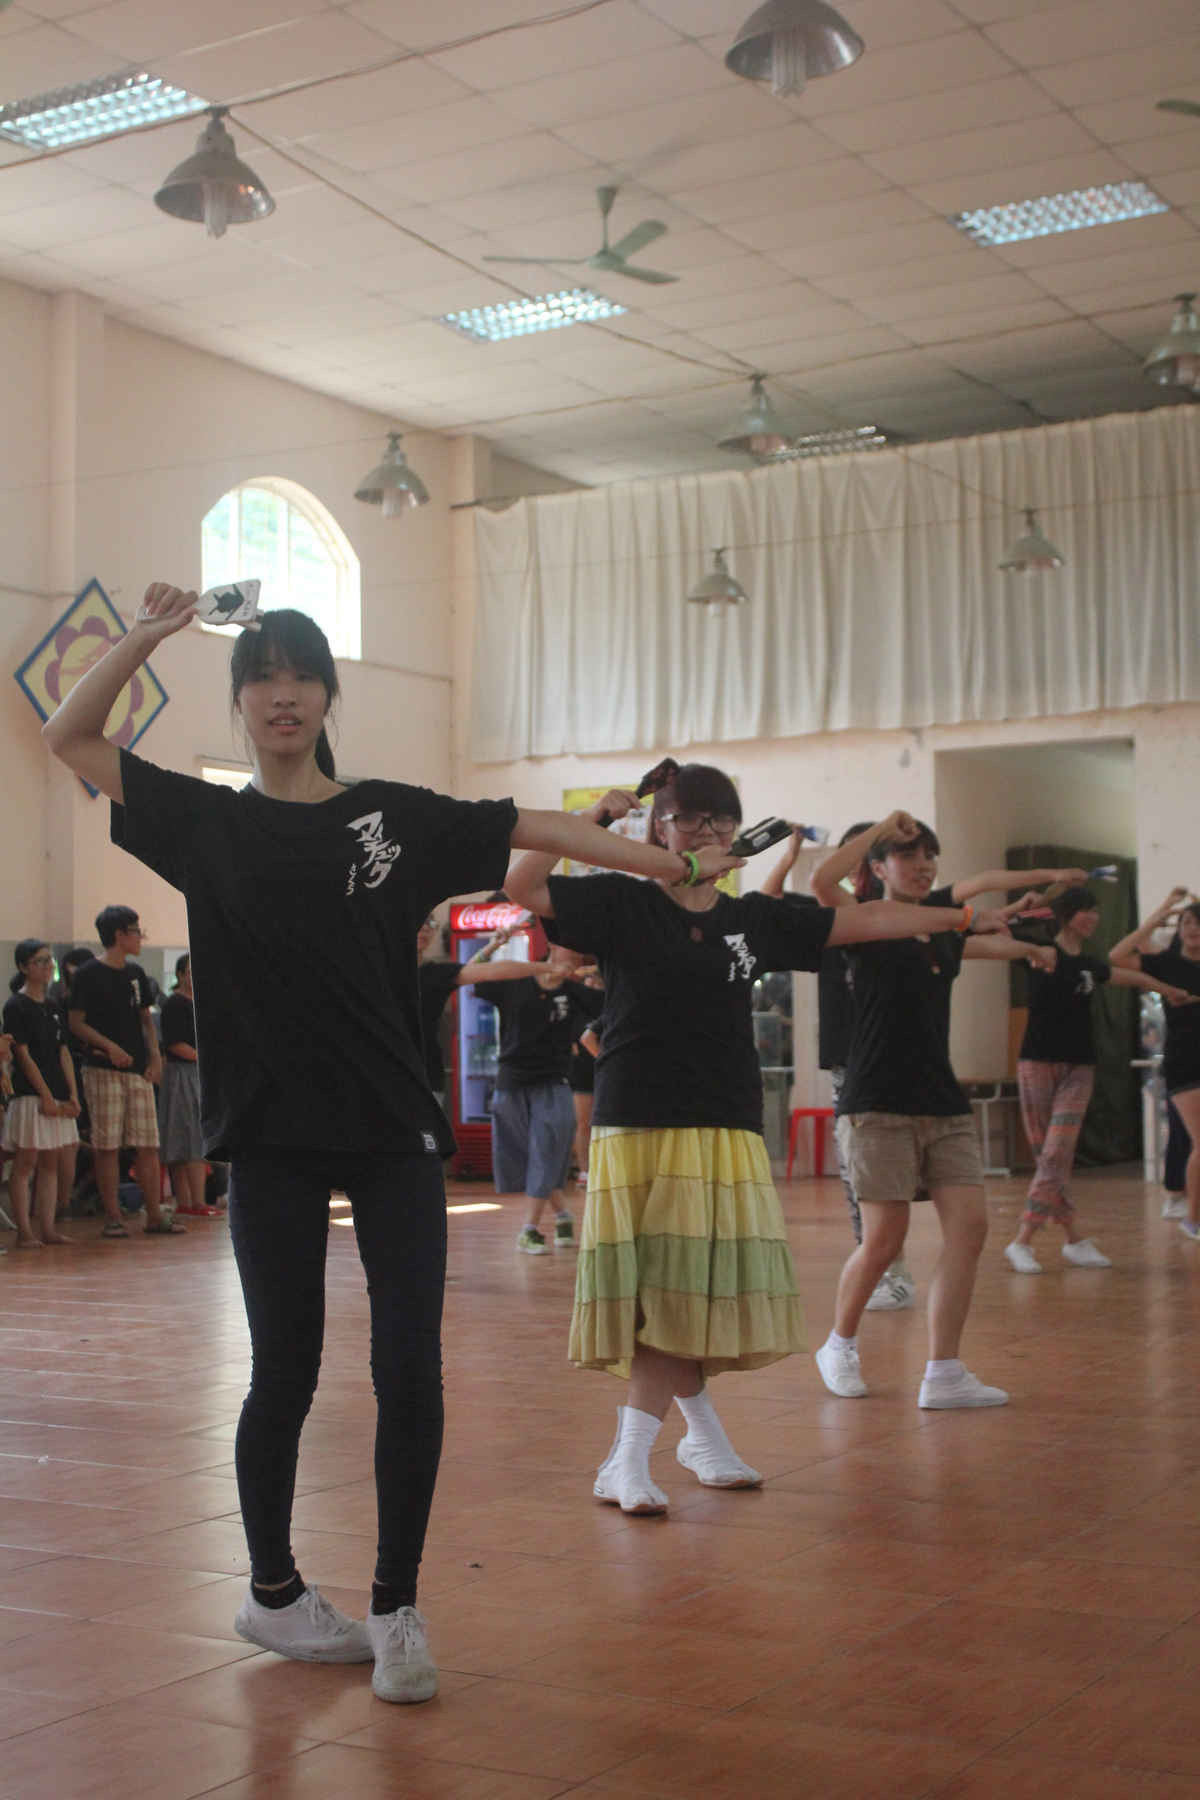 Sự đồng đều trong từng động tác là rất quan trọng tạo nên sức hấp dẫn trong một điệu nhảy tập thể như Yosakoi.